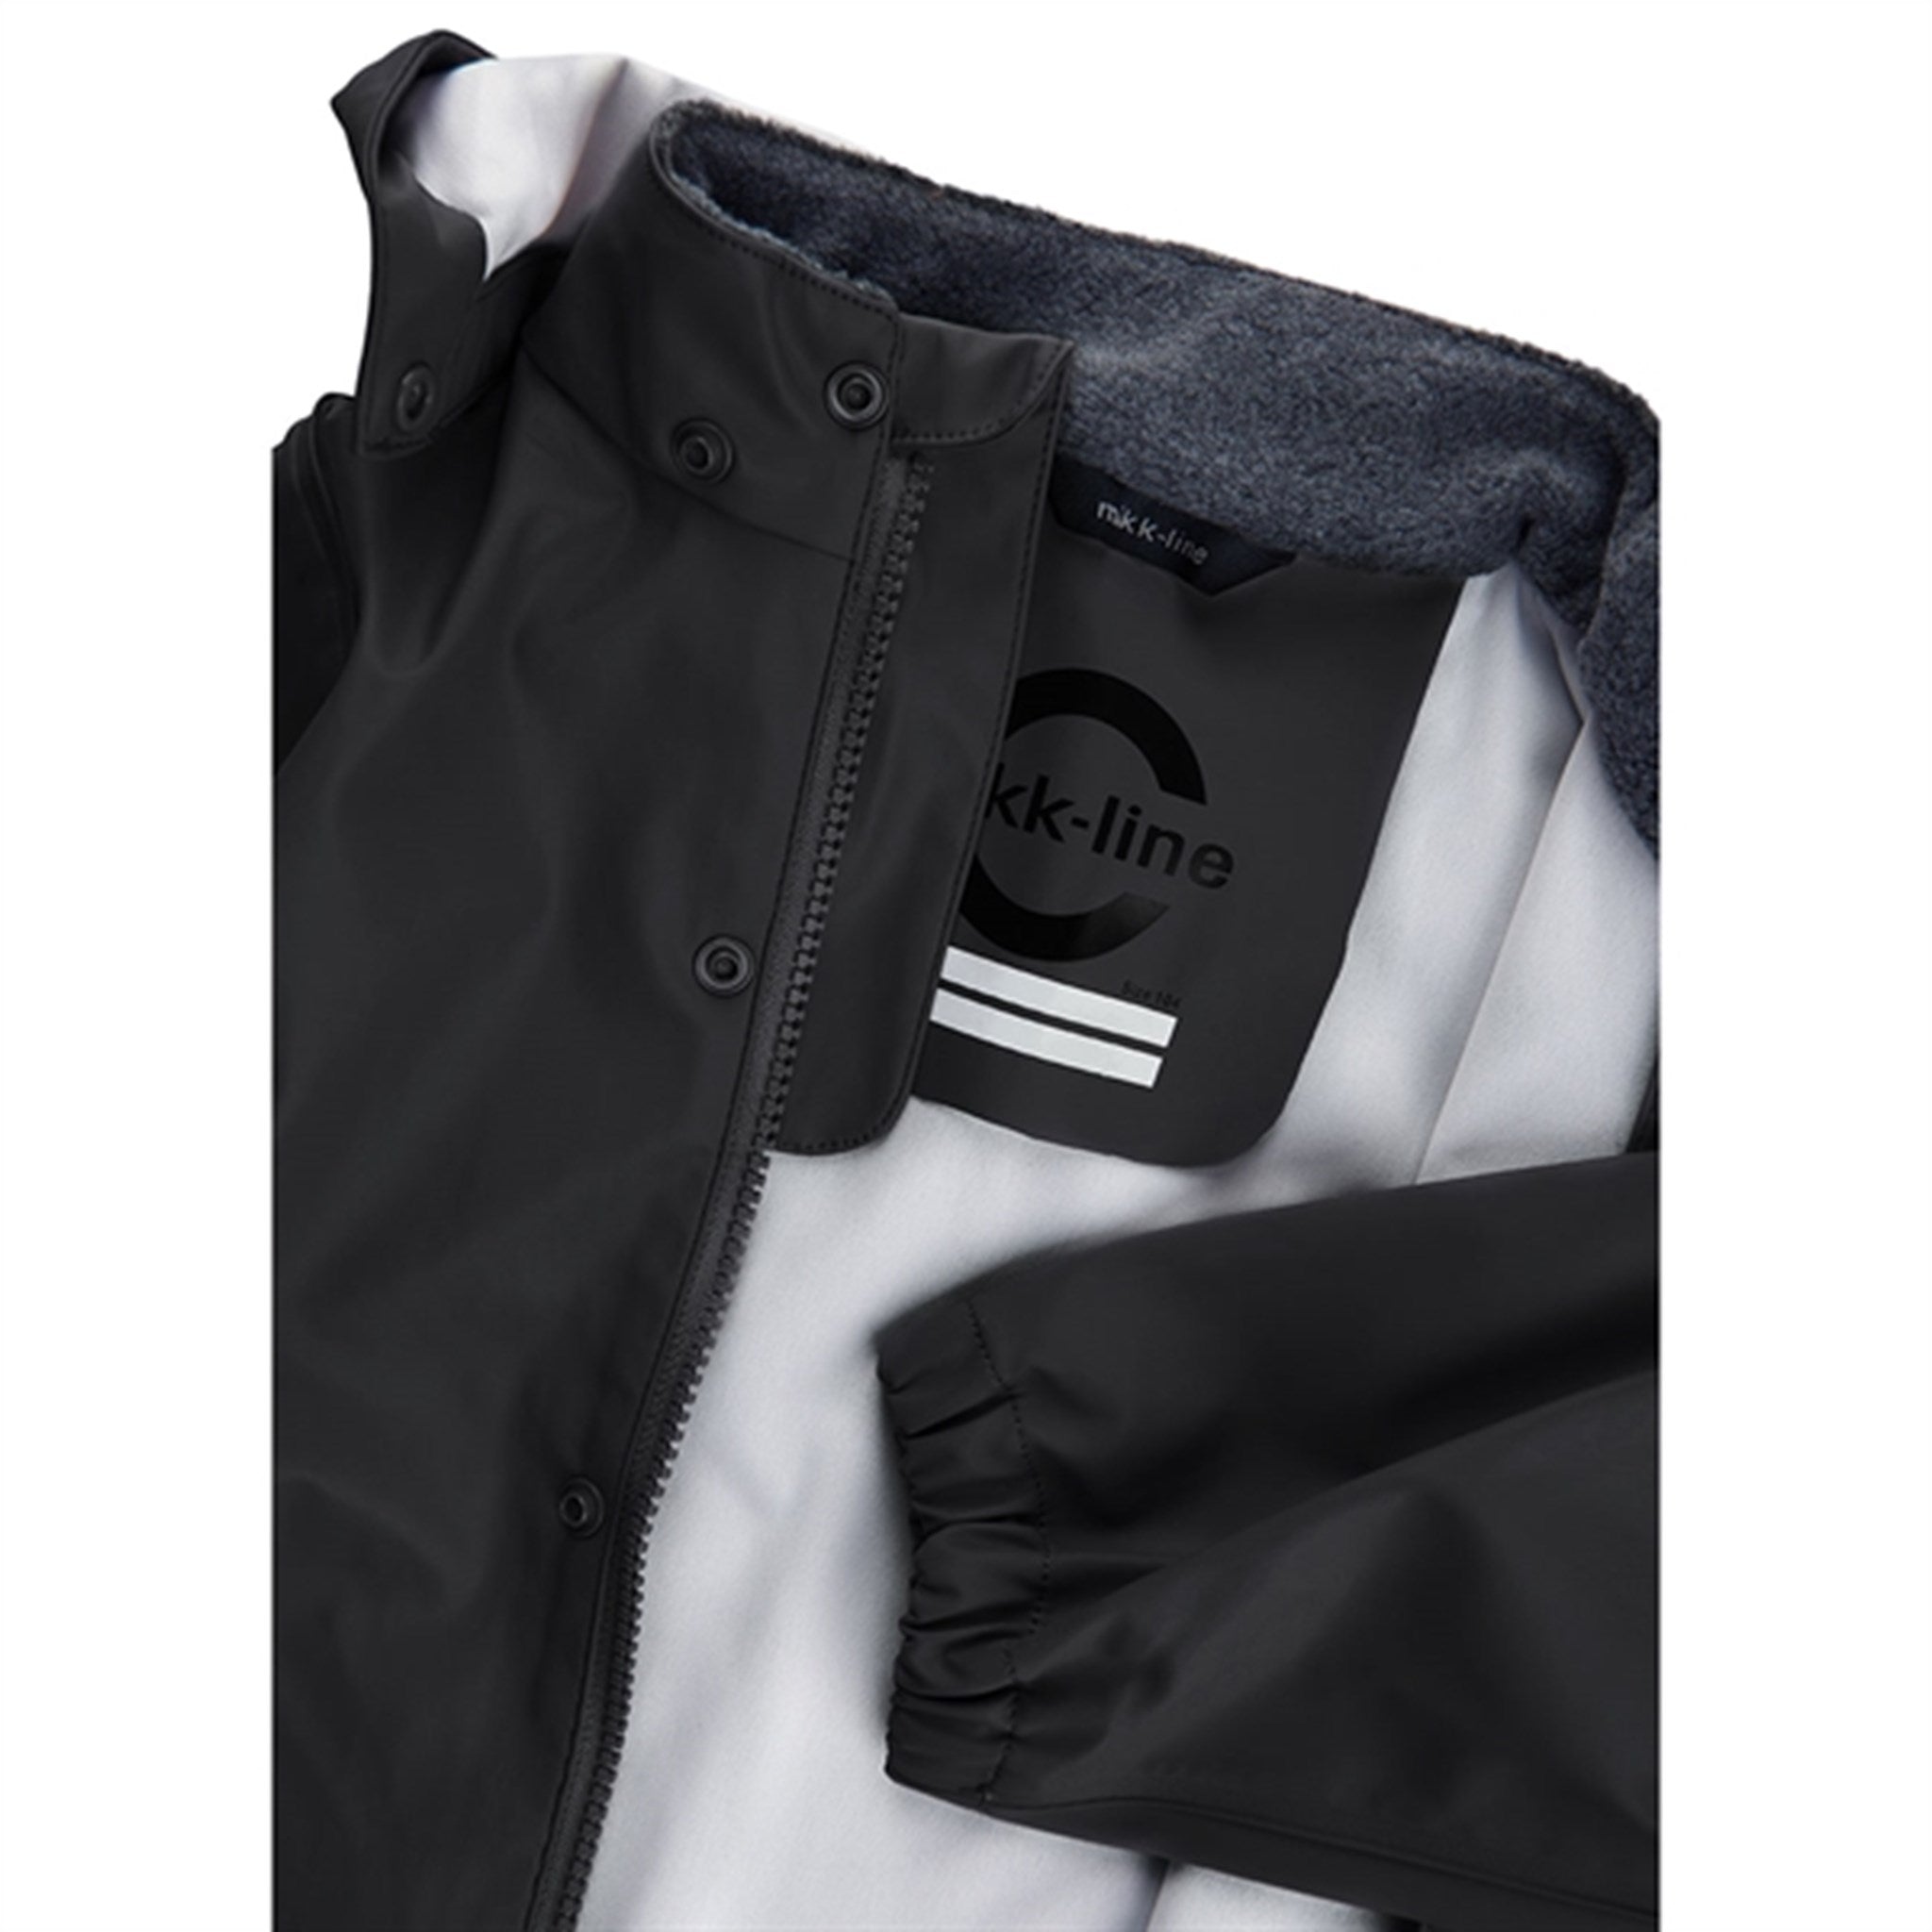 Mikk-Line Rainwear Jacket And Pants Black 5